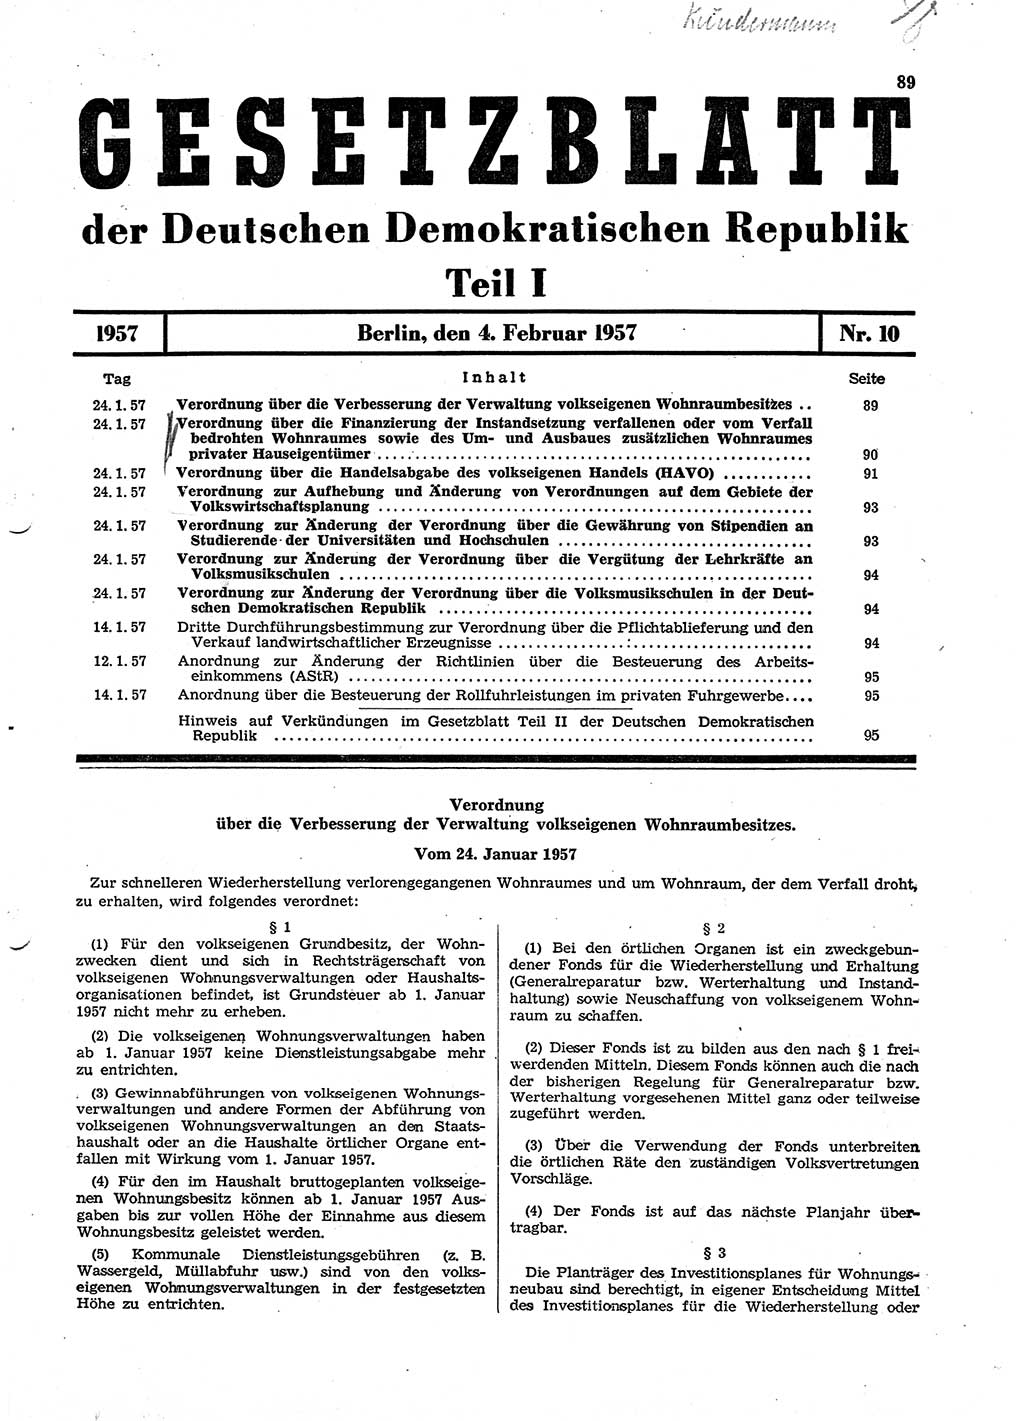 Gesetzblatt (GBl.) der Deutschen Demokratischen Republik (DDR) Teil Ⅰ 1957, Seite 89 (GBl. DDR Ⅰ 1957, S. 89)